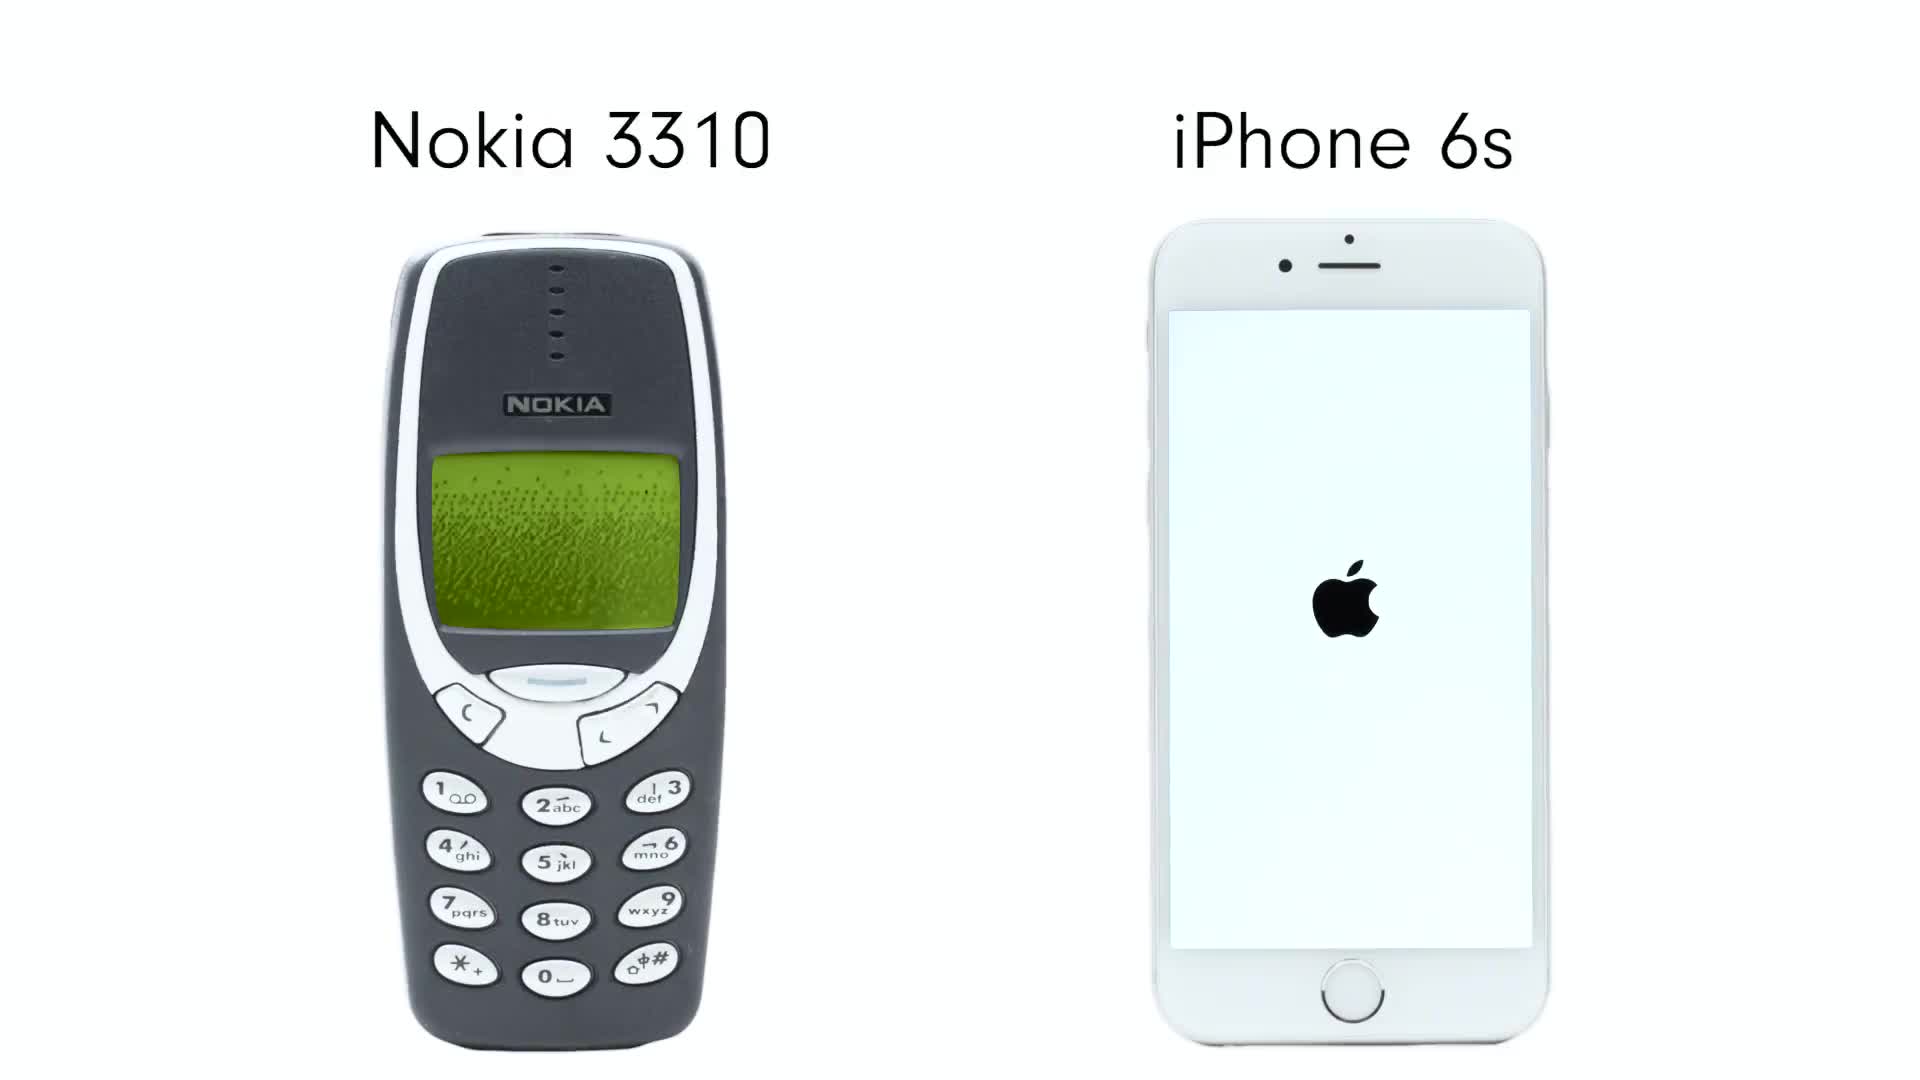 So sánh giữa điện thoại Nokia 3310 và iPhone 6s đã từng là chủ đề nóng trên thị trường. Bạn có muốn xem các bức ảnh và thảo luận về ưu điểm và nhược điểm của hai điện thoại này? Hãy xem ngay để so sánh và tìm ra lựa chọn phù hợp nhất cho bạn!